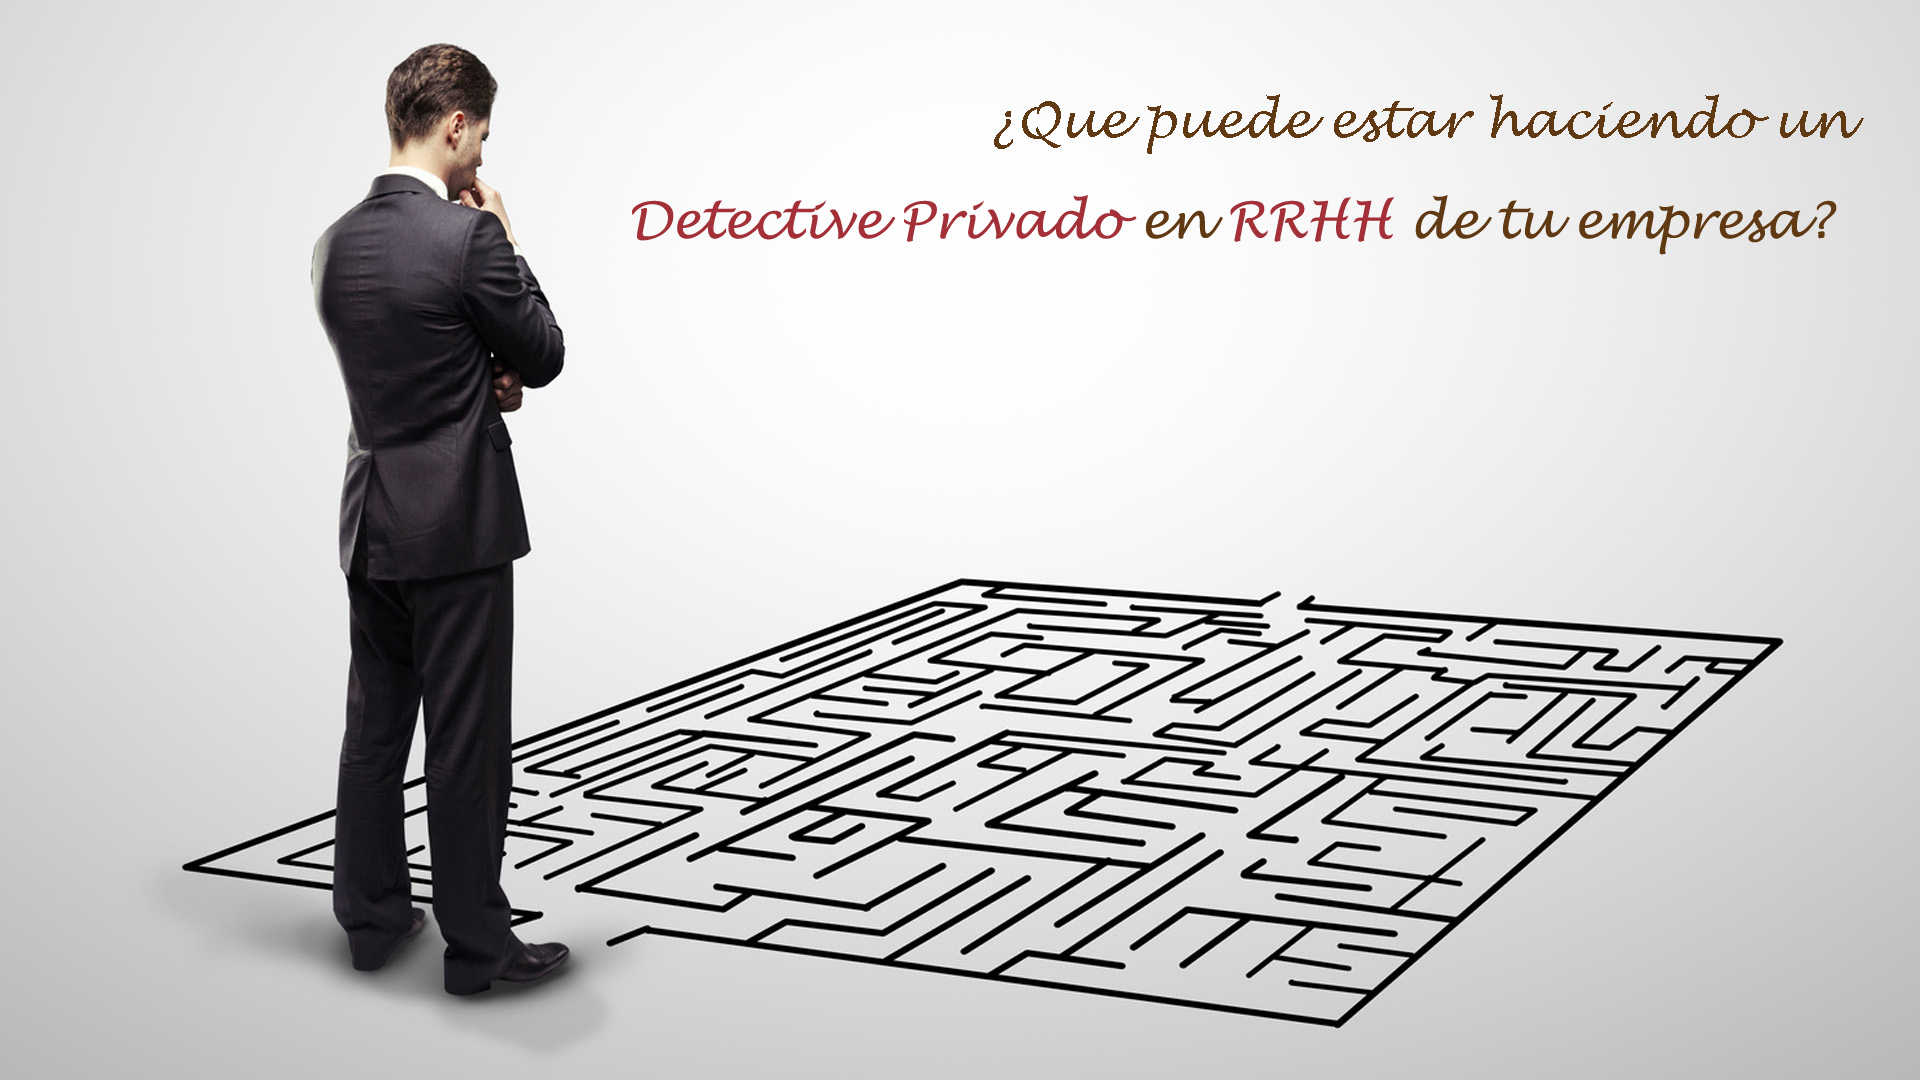 Detective privados y RRHH